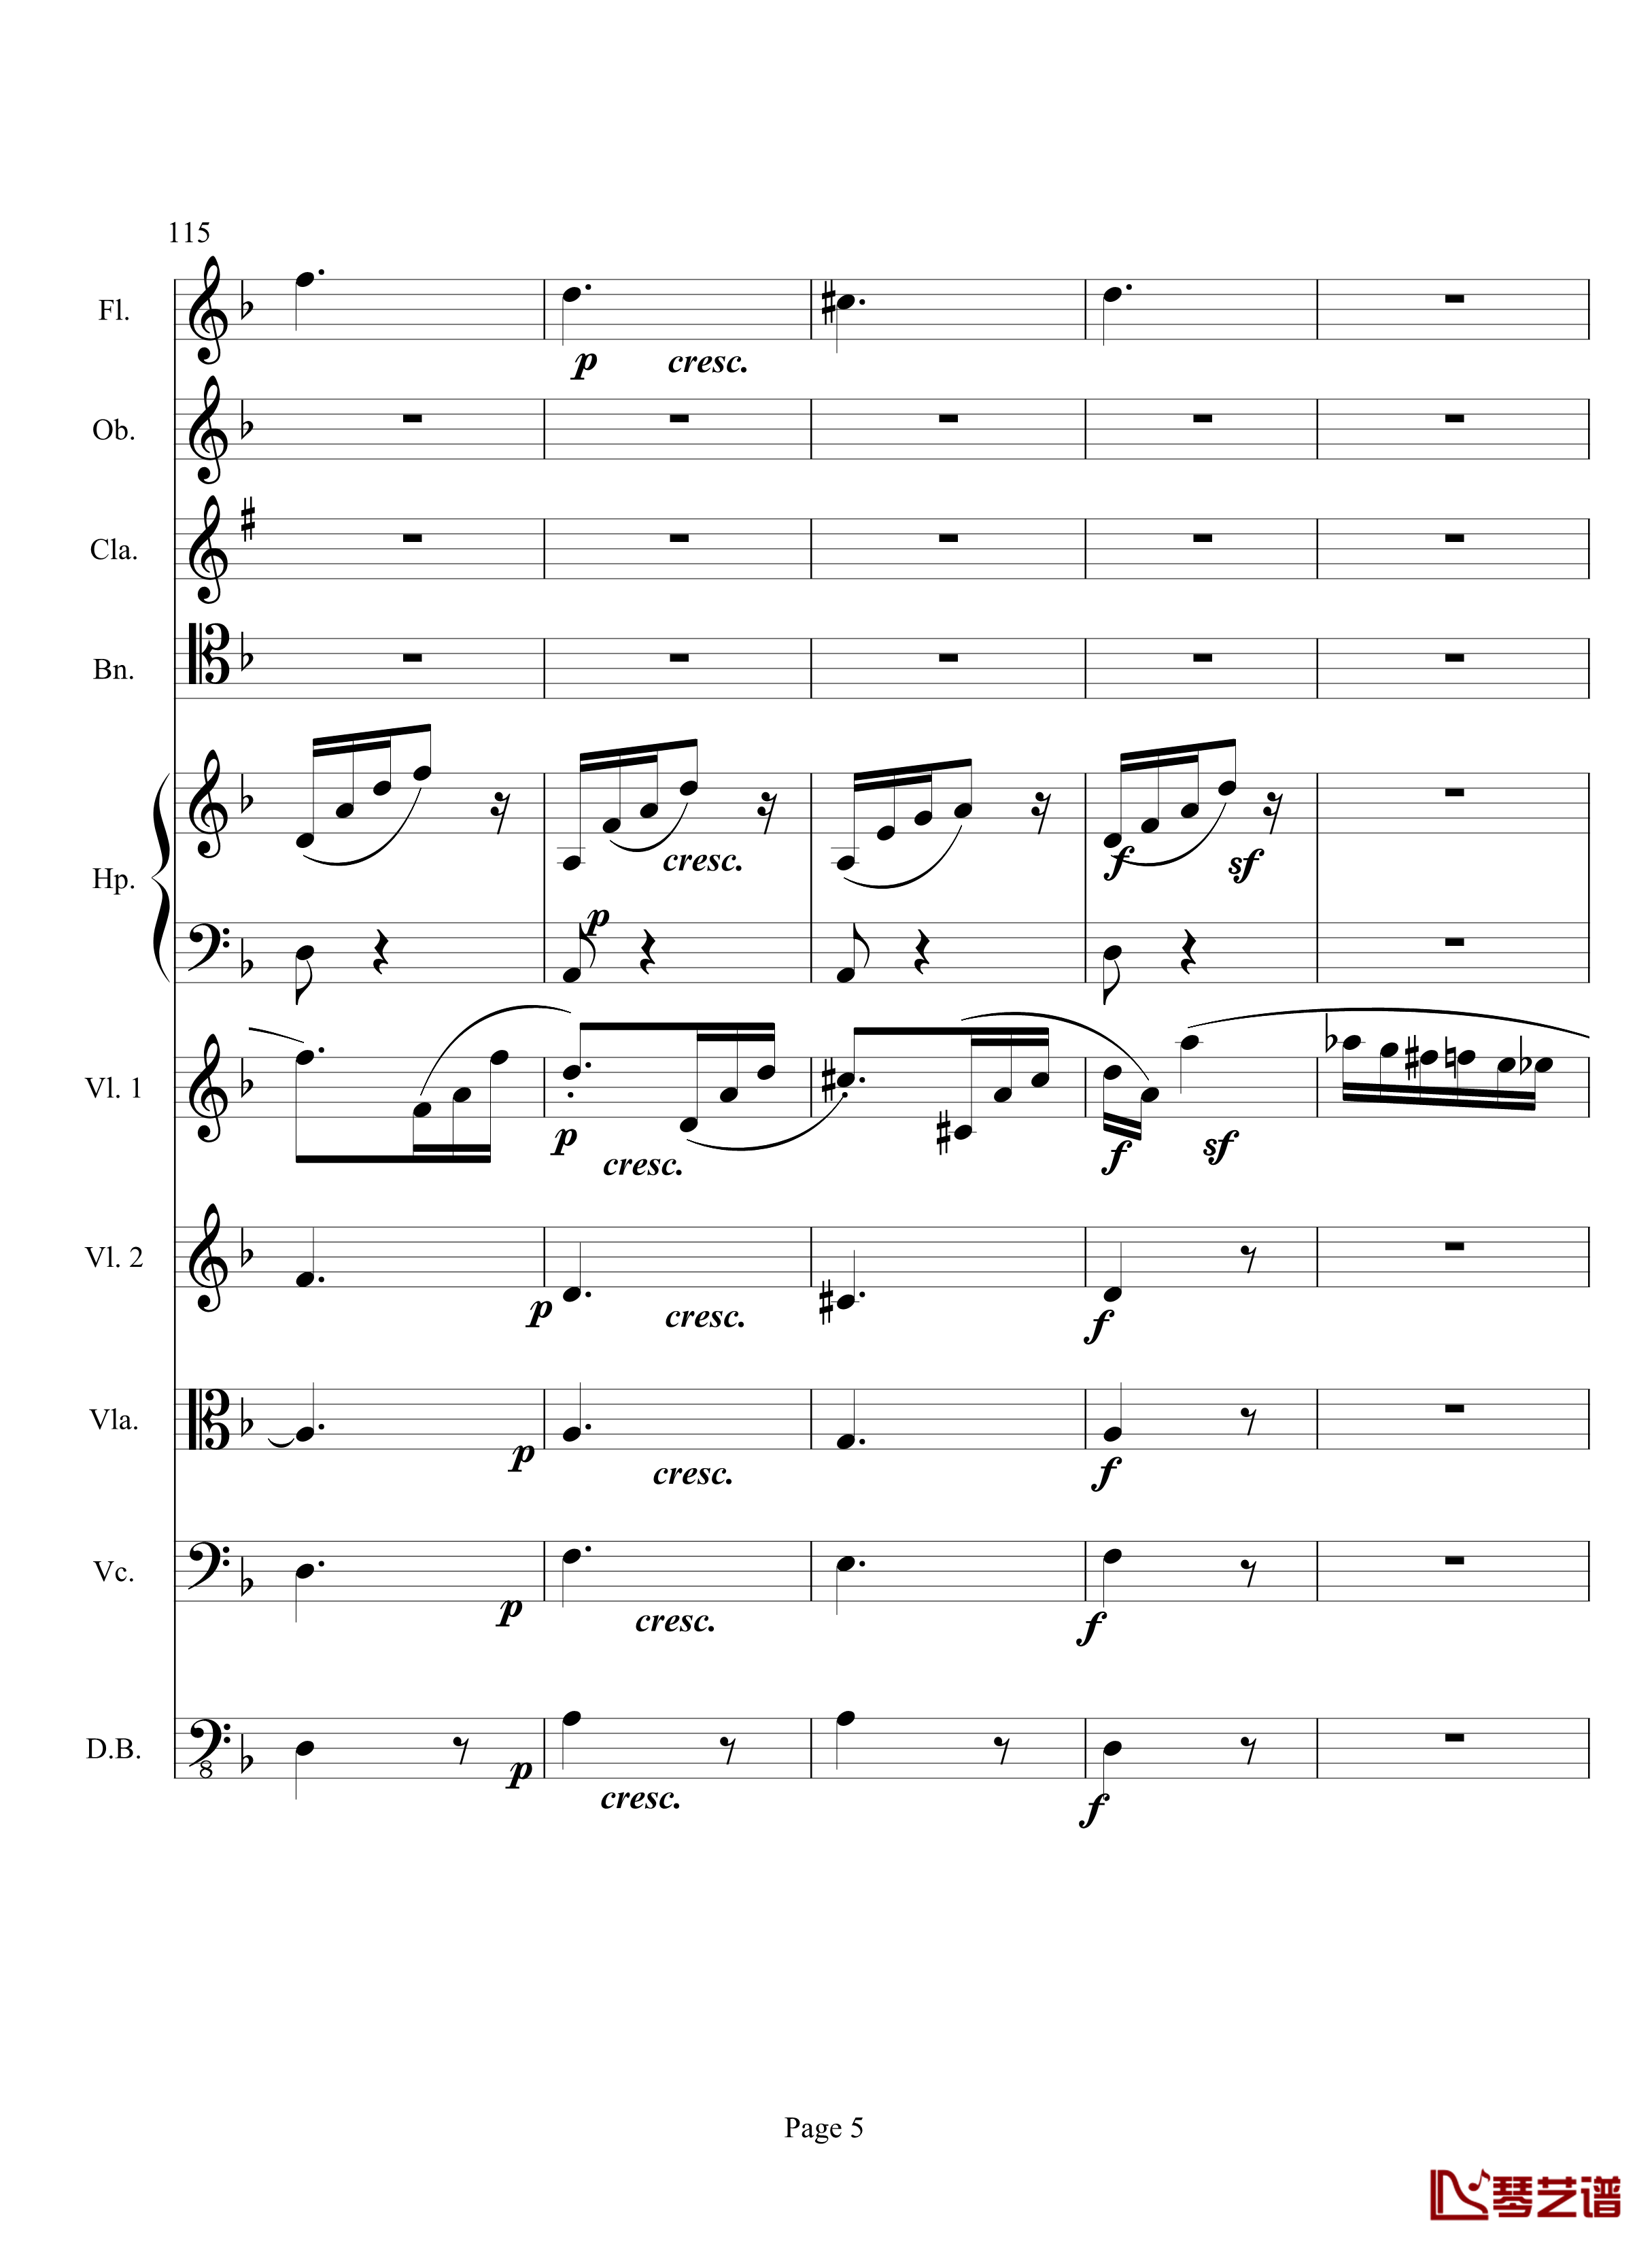 奏鸣曲之交响钢琴谱-第17首-Ⅲ-贝多芬-beethoven5